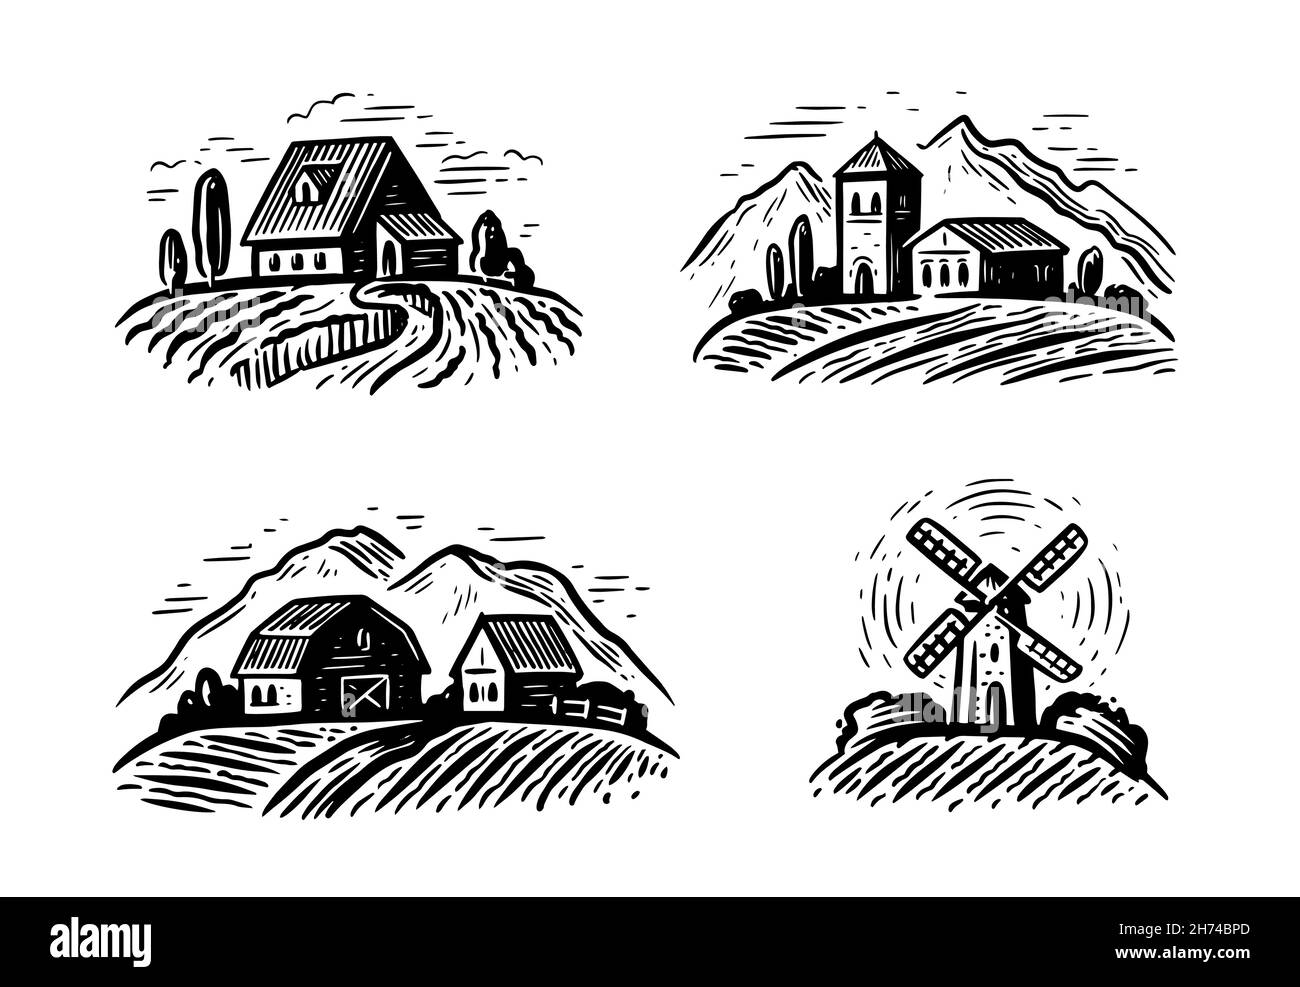 Fattoria rurale paesaggio set. Illustrazione vettoriale disegnata a mano. Emblema dell'agricoltura e dell'agricoltura Illustrazione Vettoriale